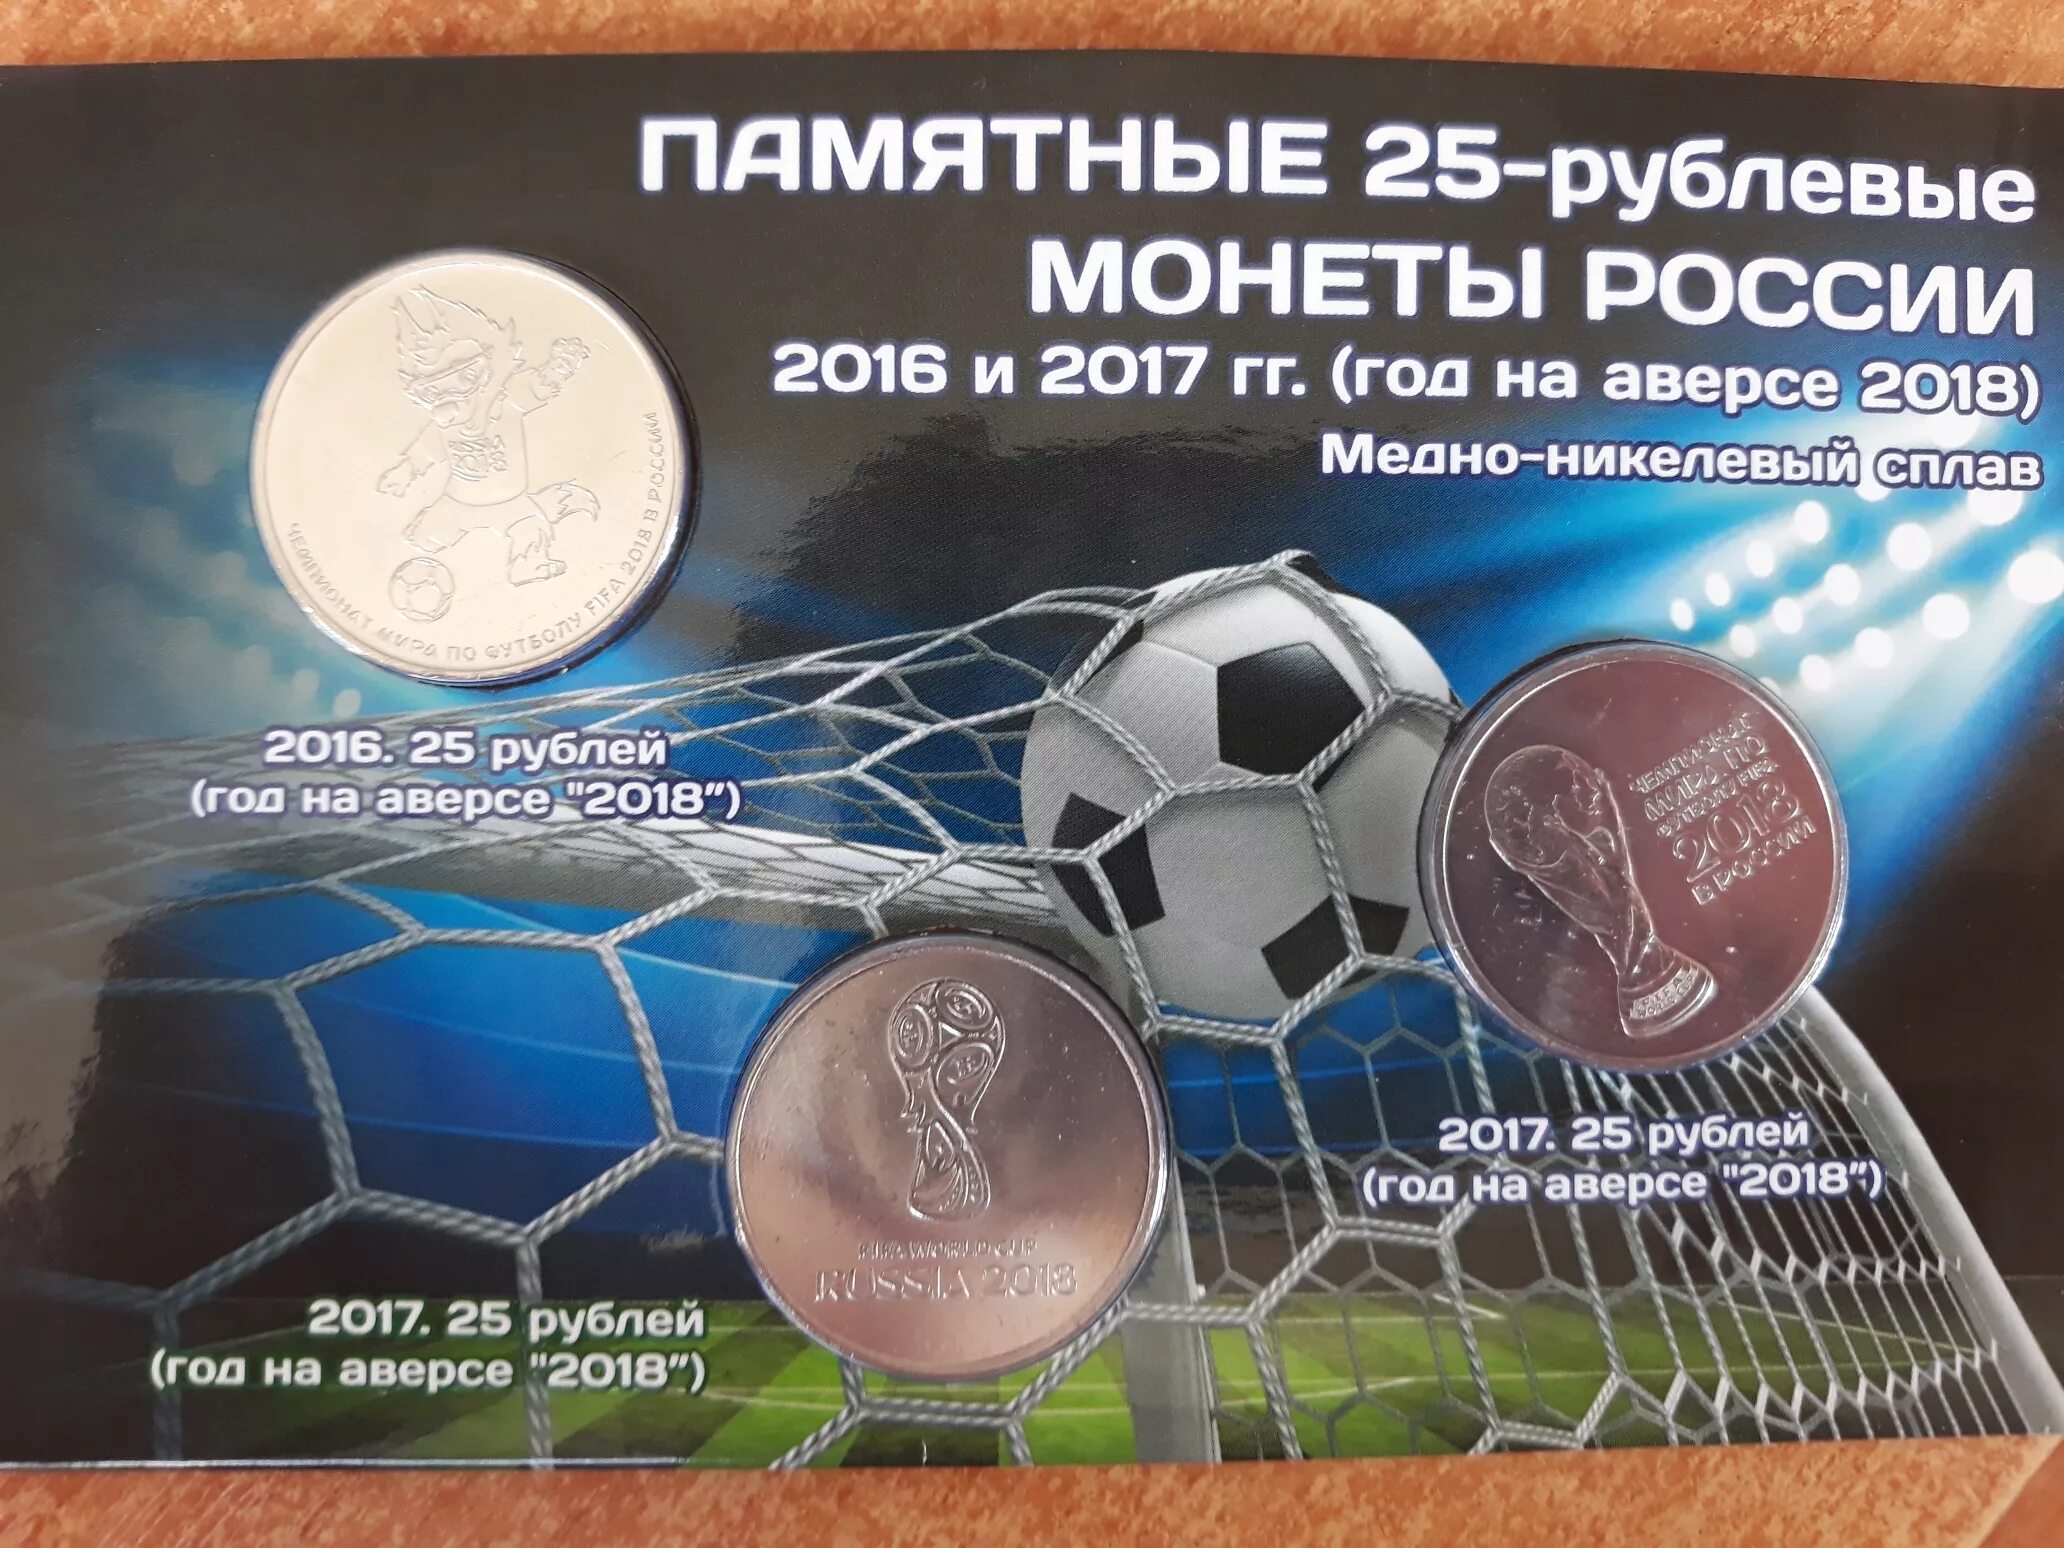 Памятная монета 25 рублей ЧМ по футболу 2018. Набор монет ФИФА 2018.